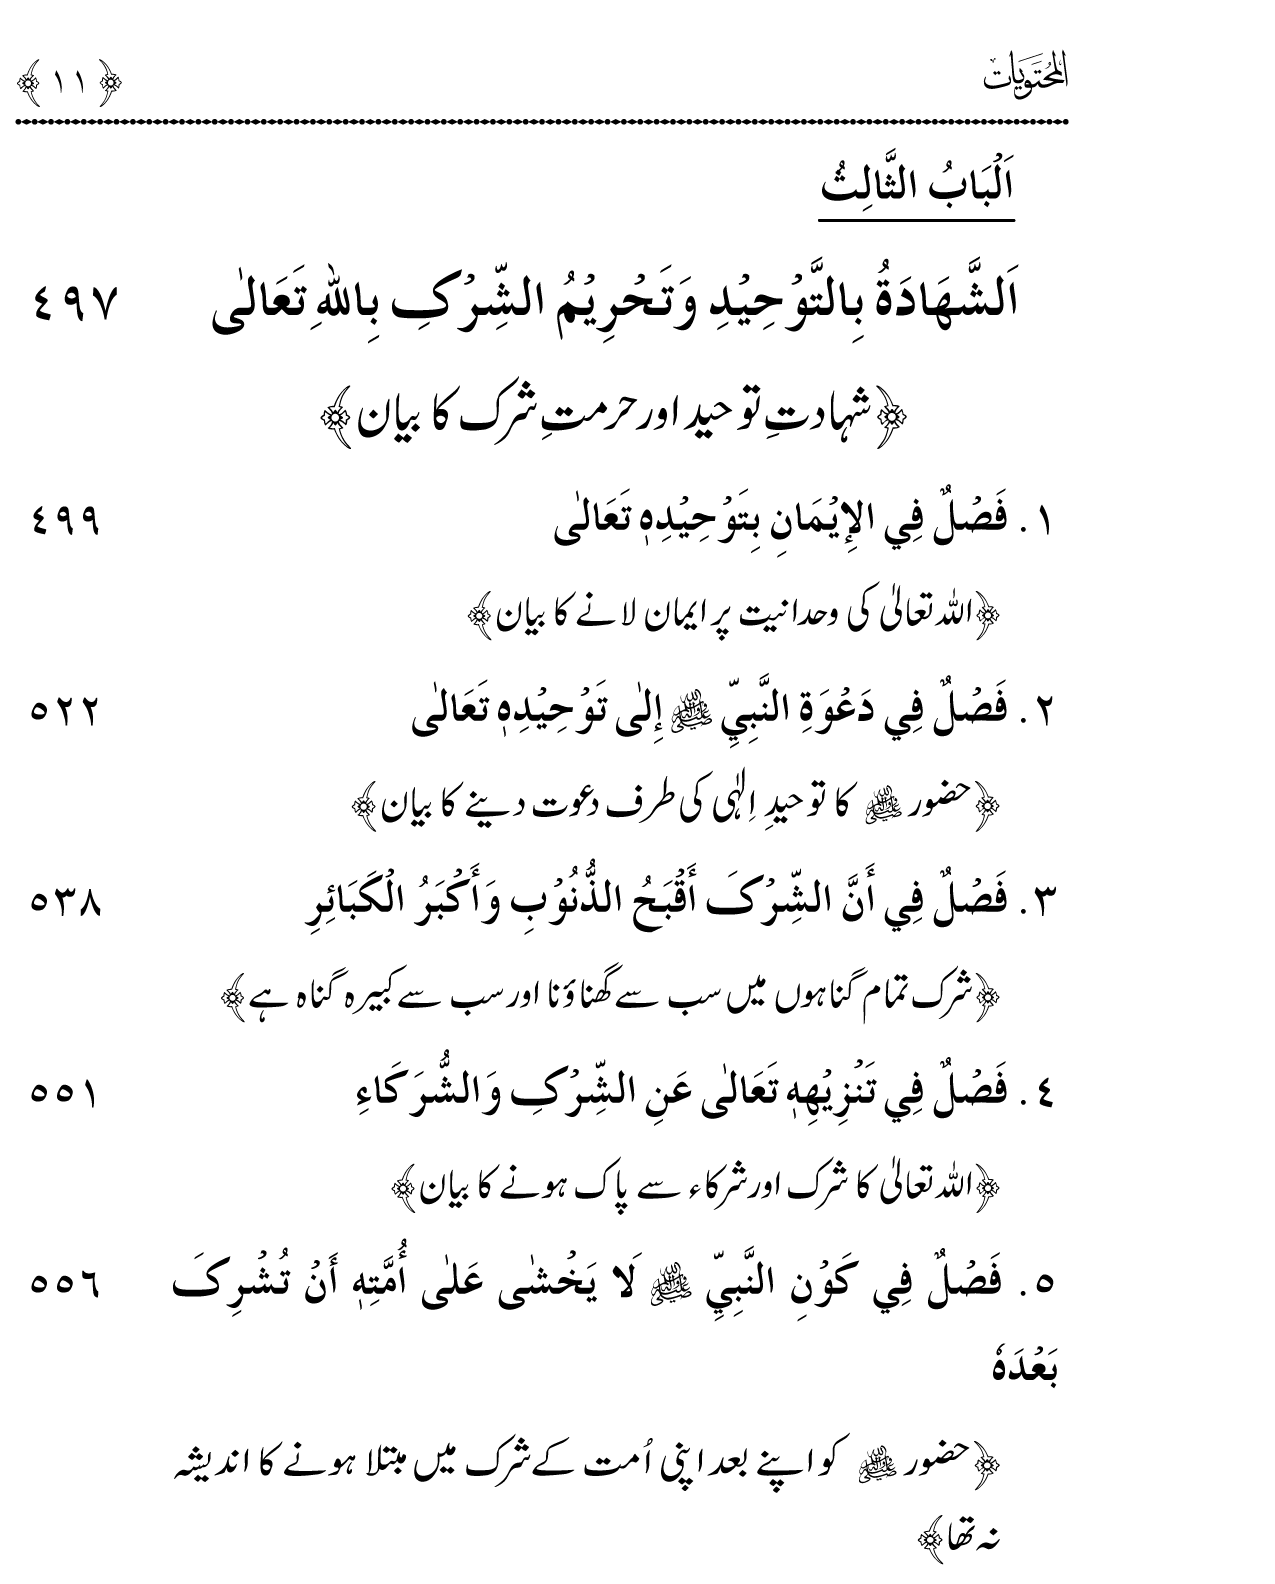 Maarij al-Sunan lin-Najat min al-Dalal wal-Fitan (Vol. 2)